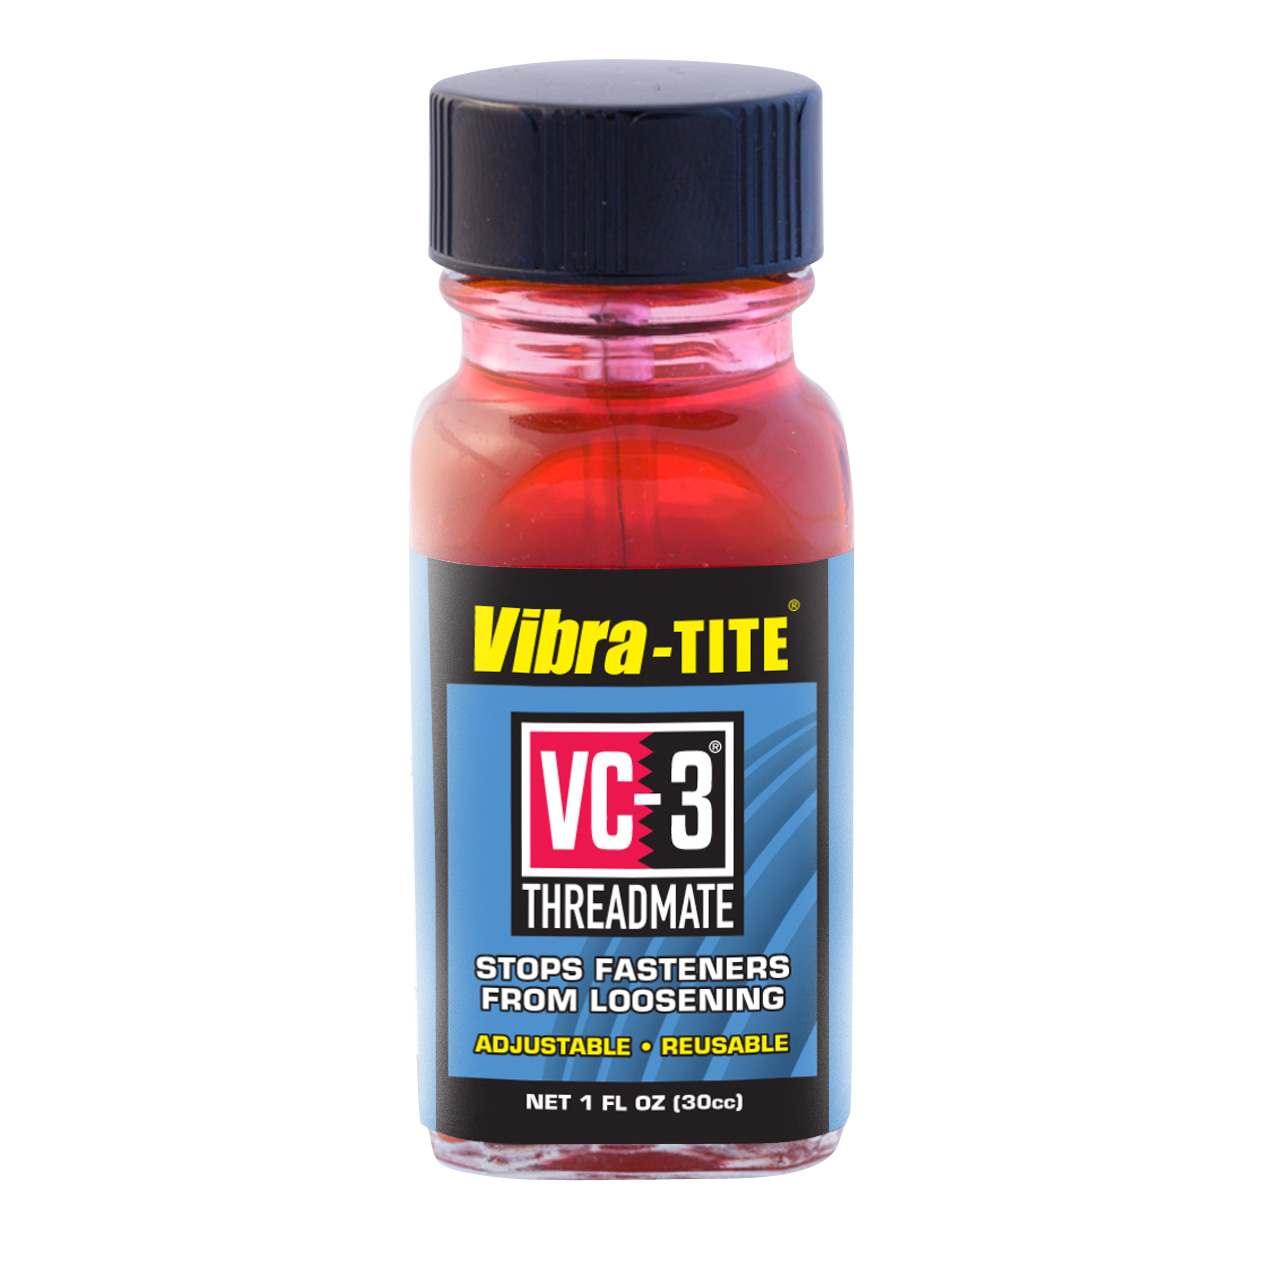 Liquids - Vibra-Tite VC